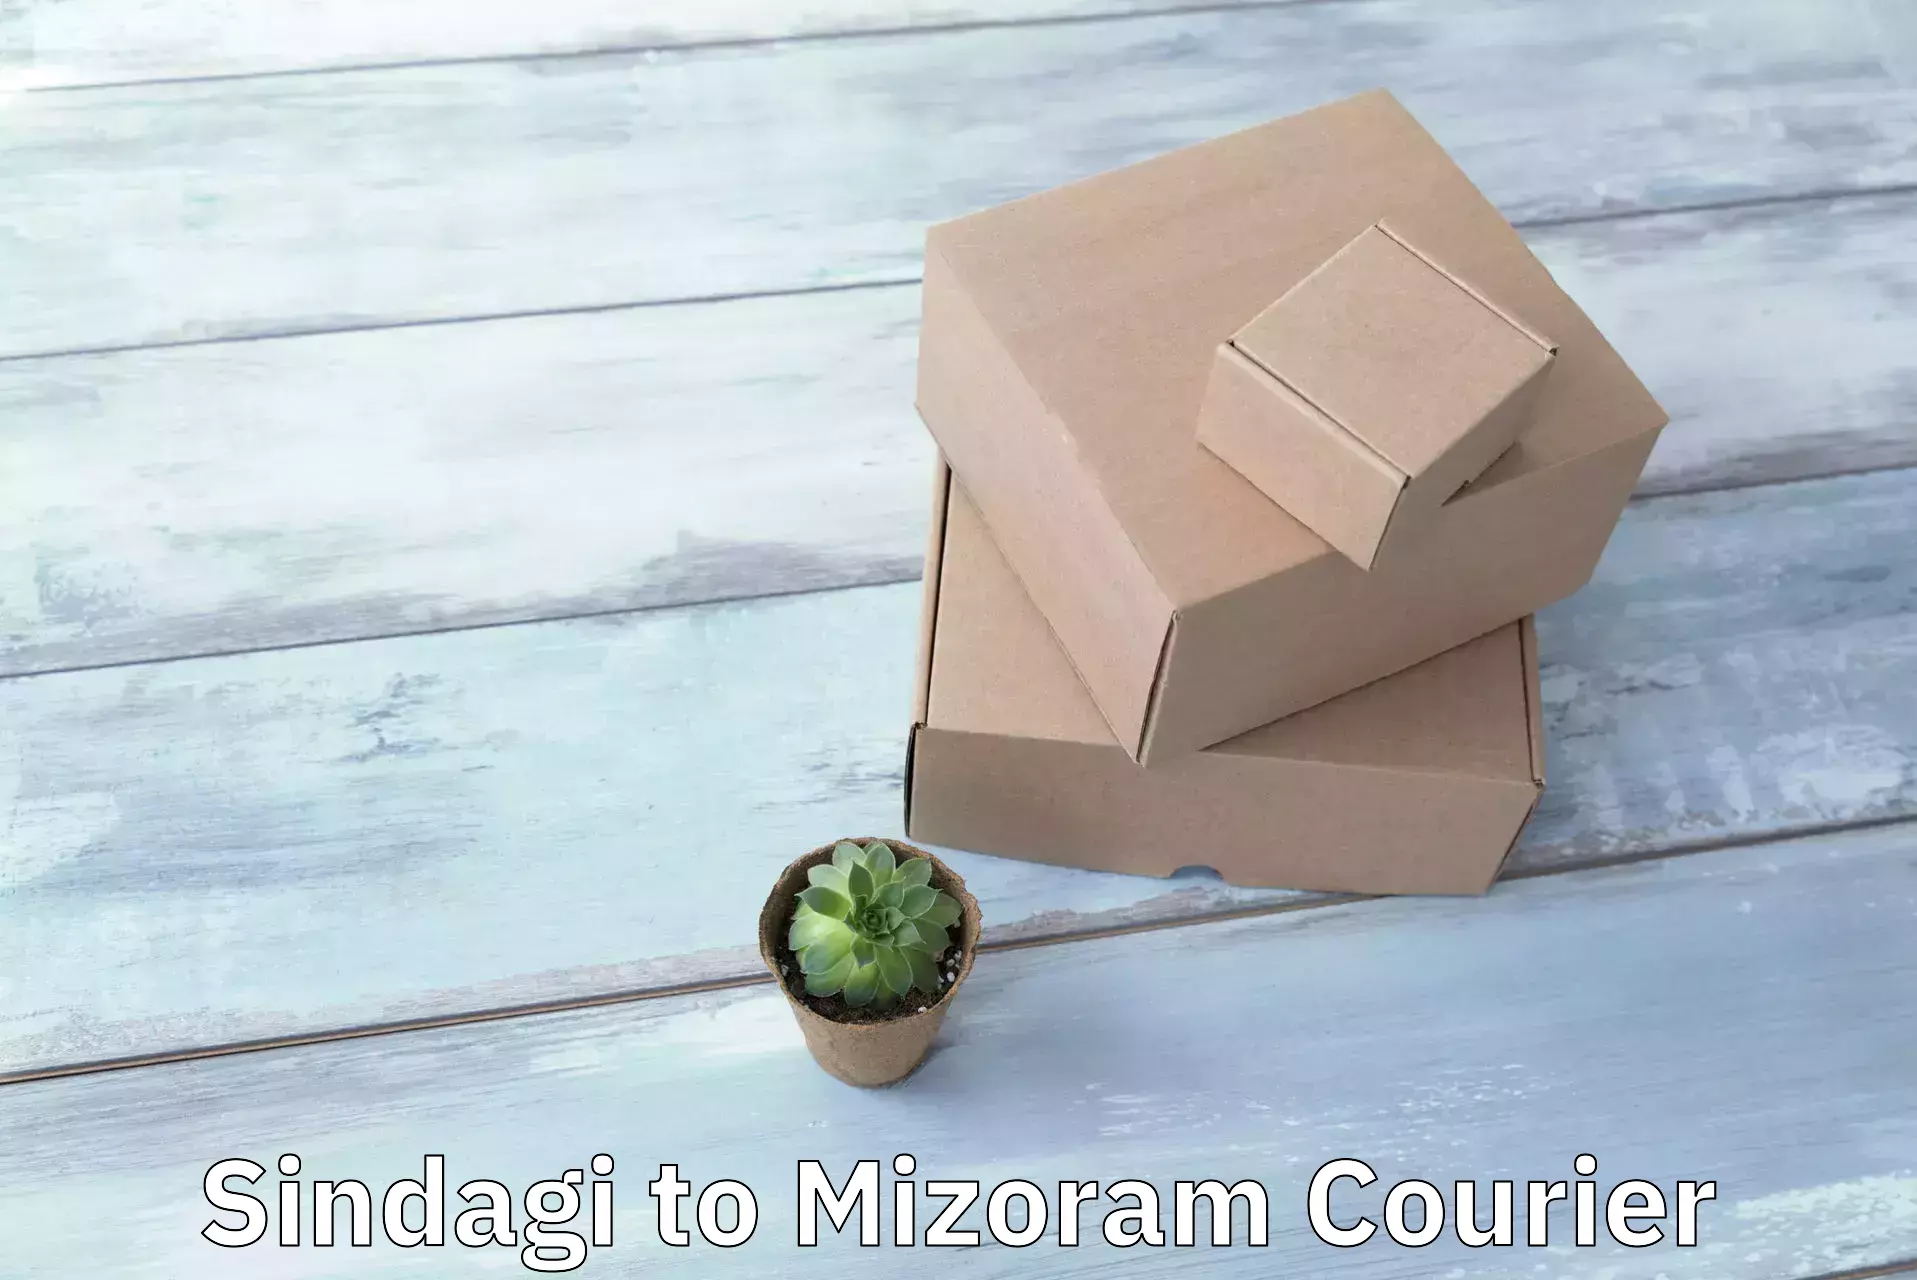 Quality courier partnerships Sindagi to Mizoram